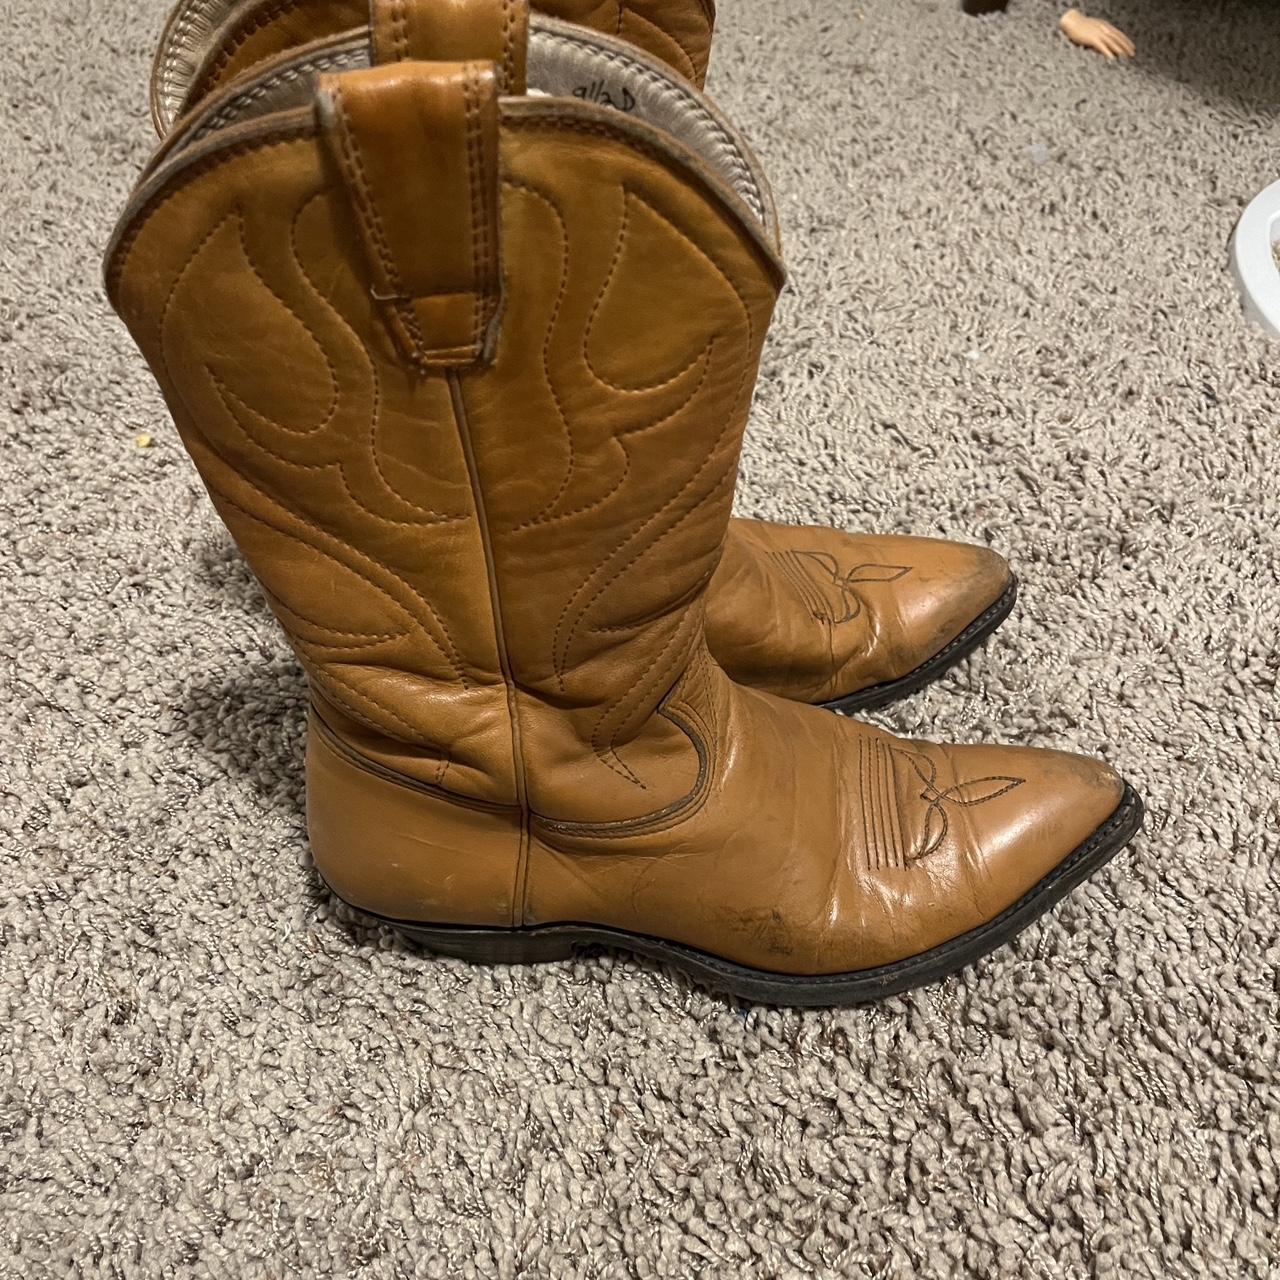 70’s cowboy boot 9.5 d - Depop